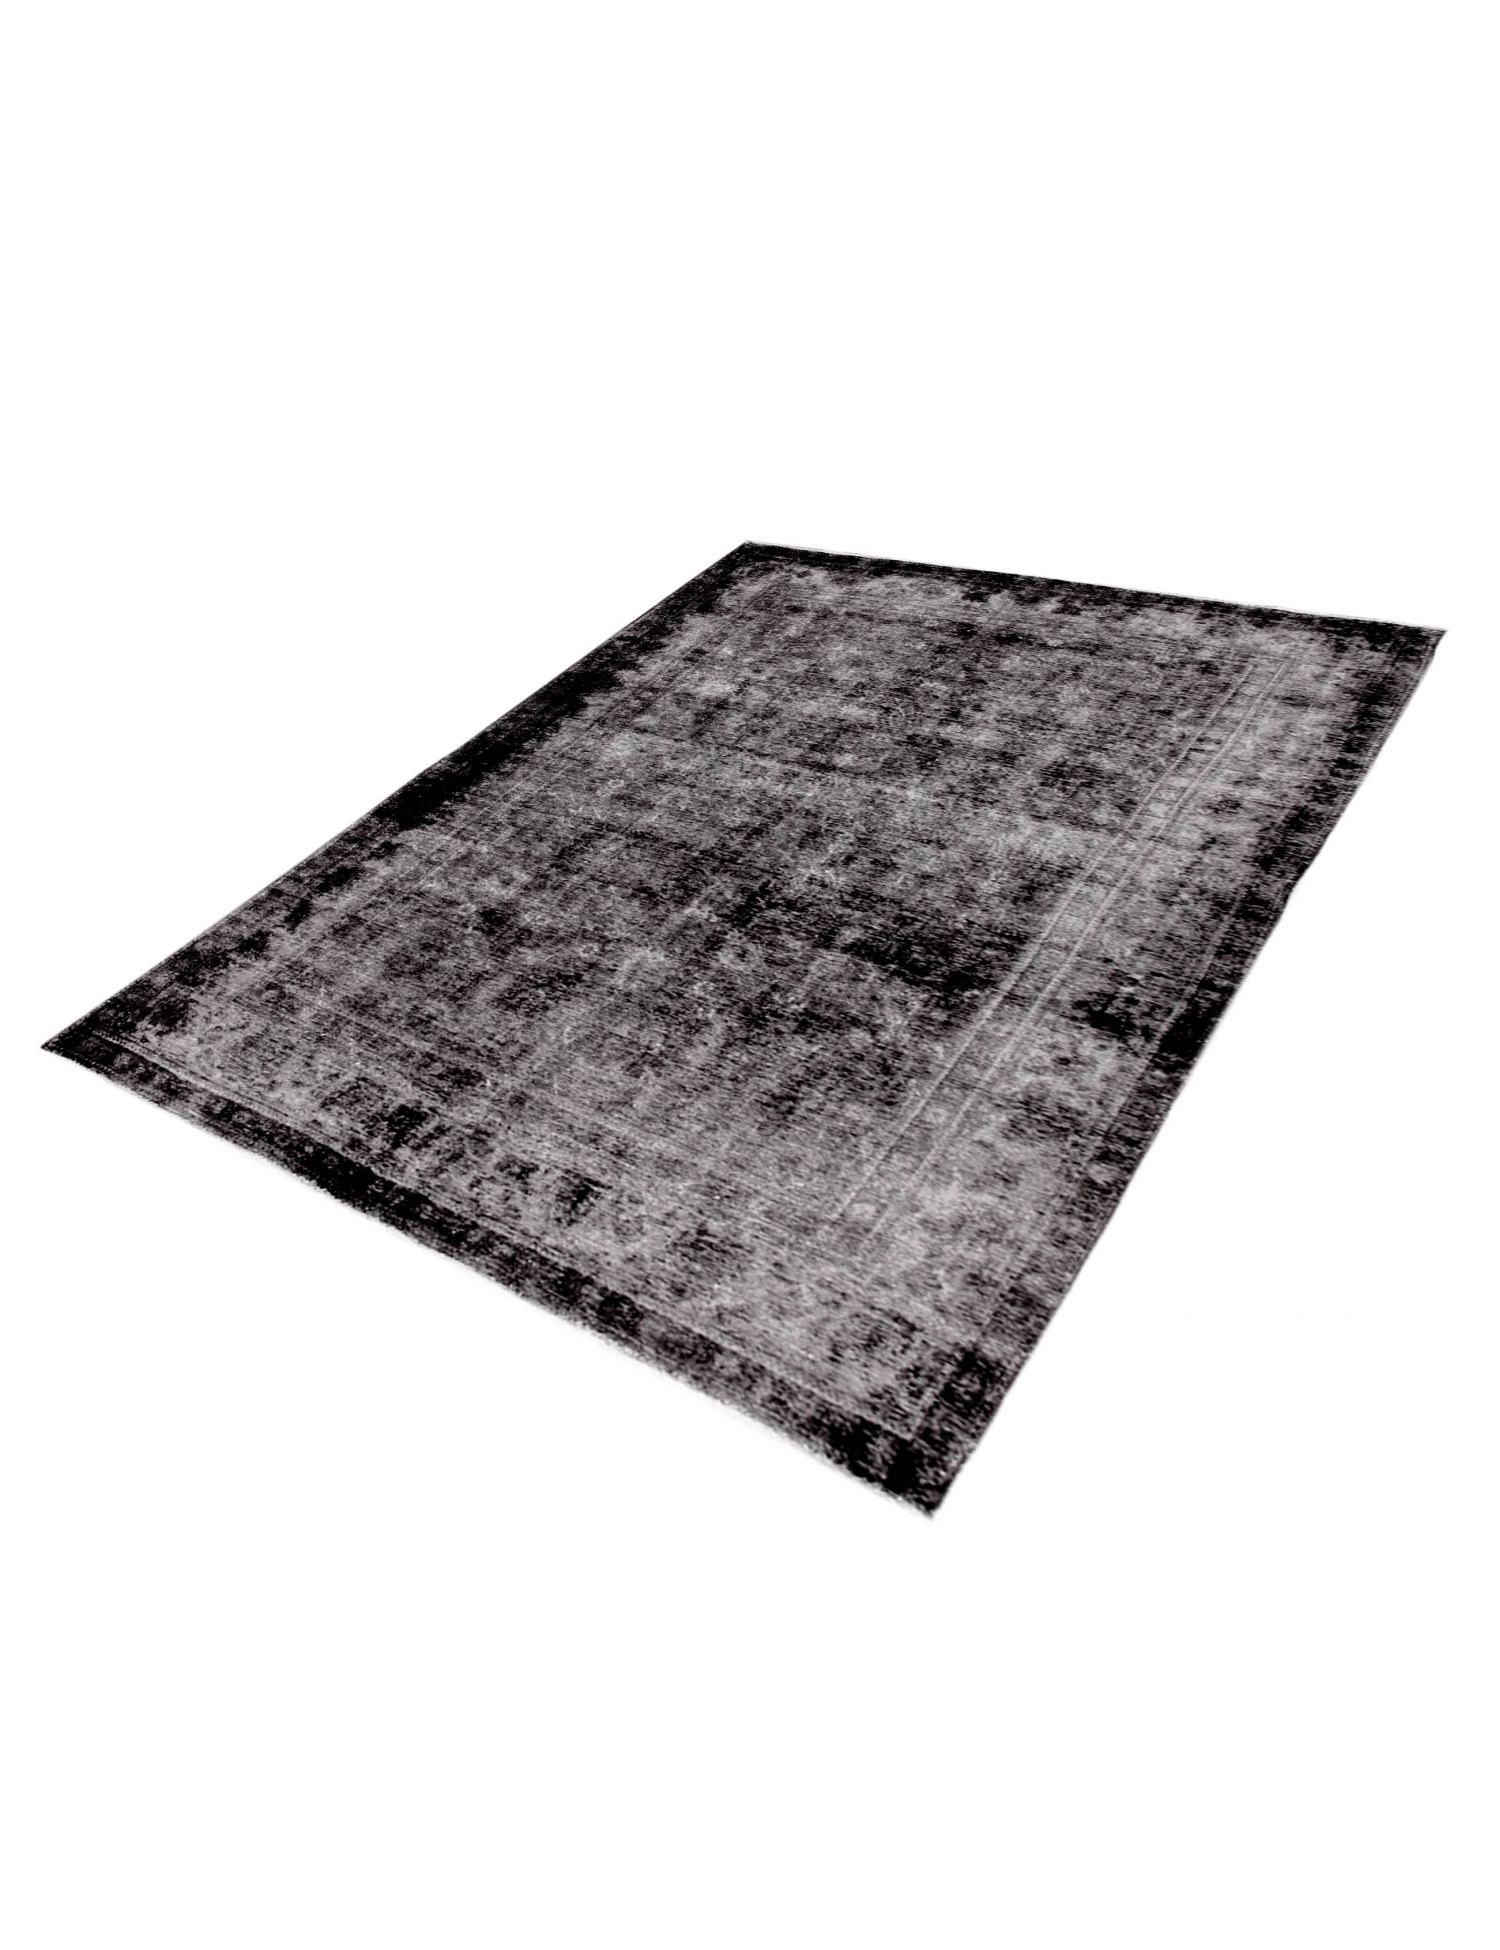 Persian Vintage Carpet  black <br/>305 x 185 cm